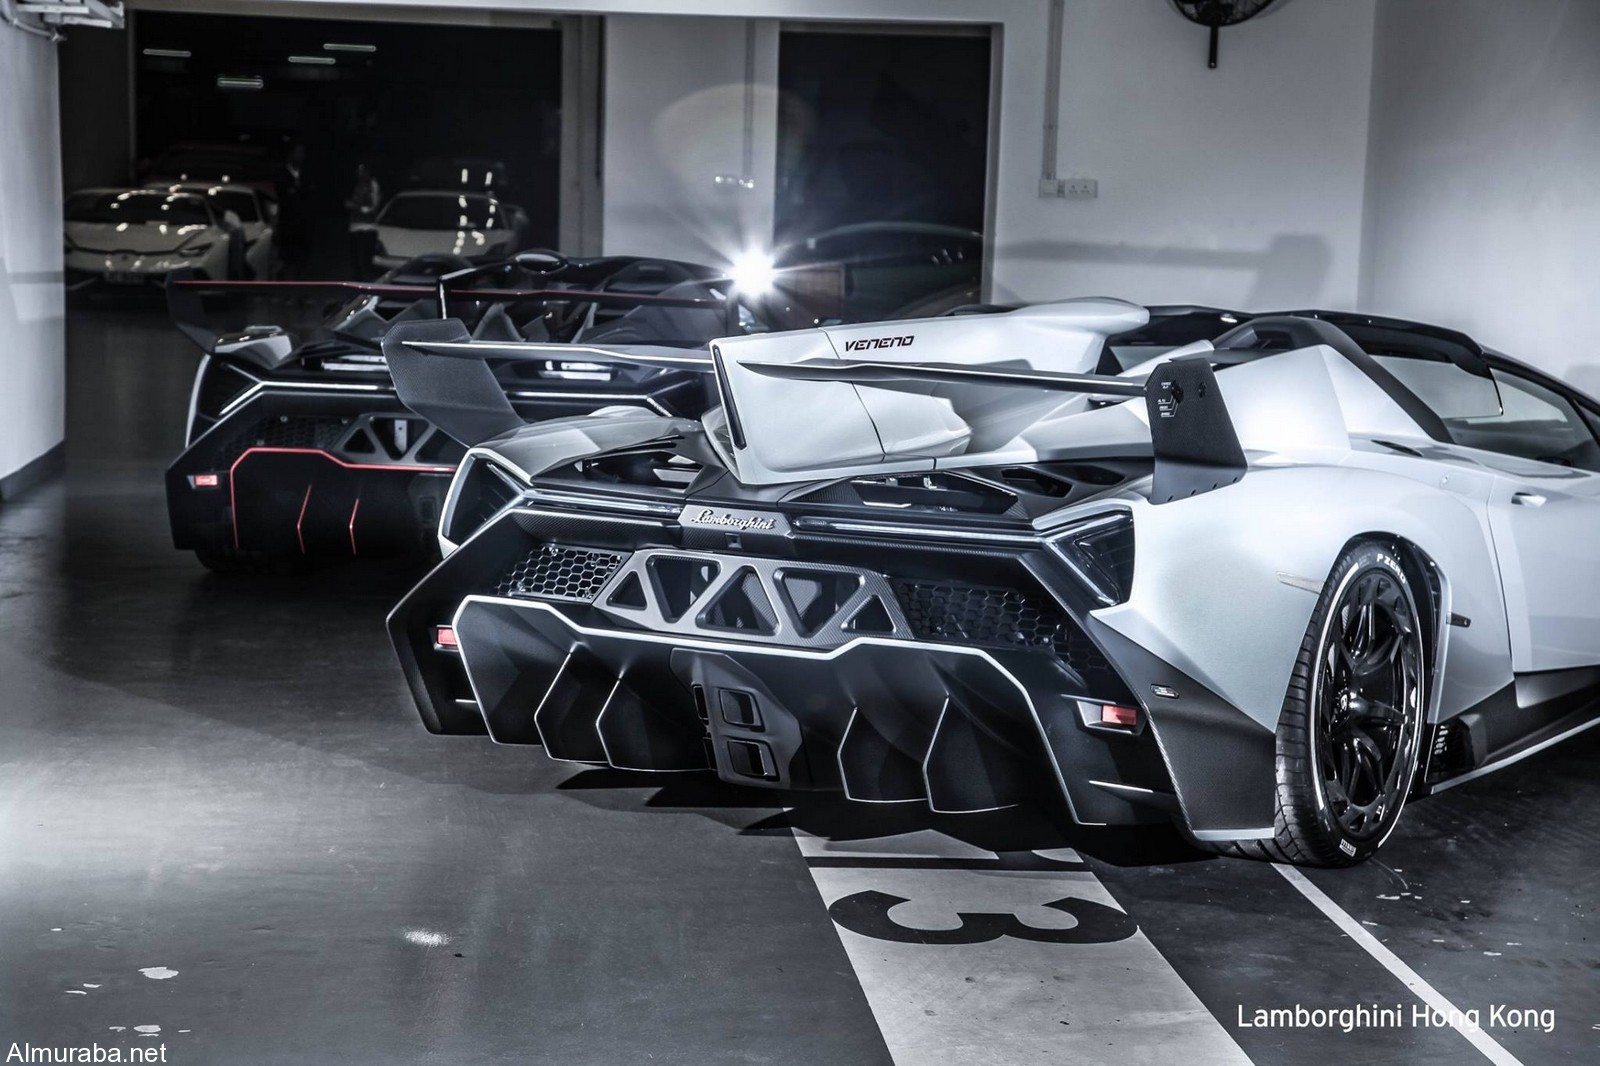 "لامبورجيني" فينينو رودستر تصل هونج كونج Lamborghini 6